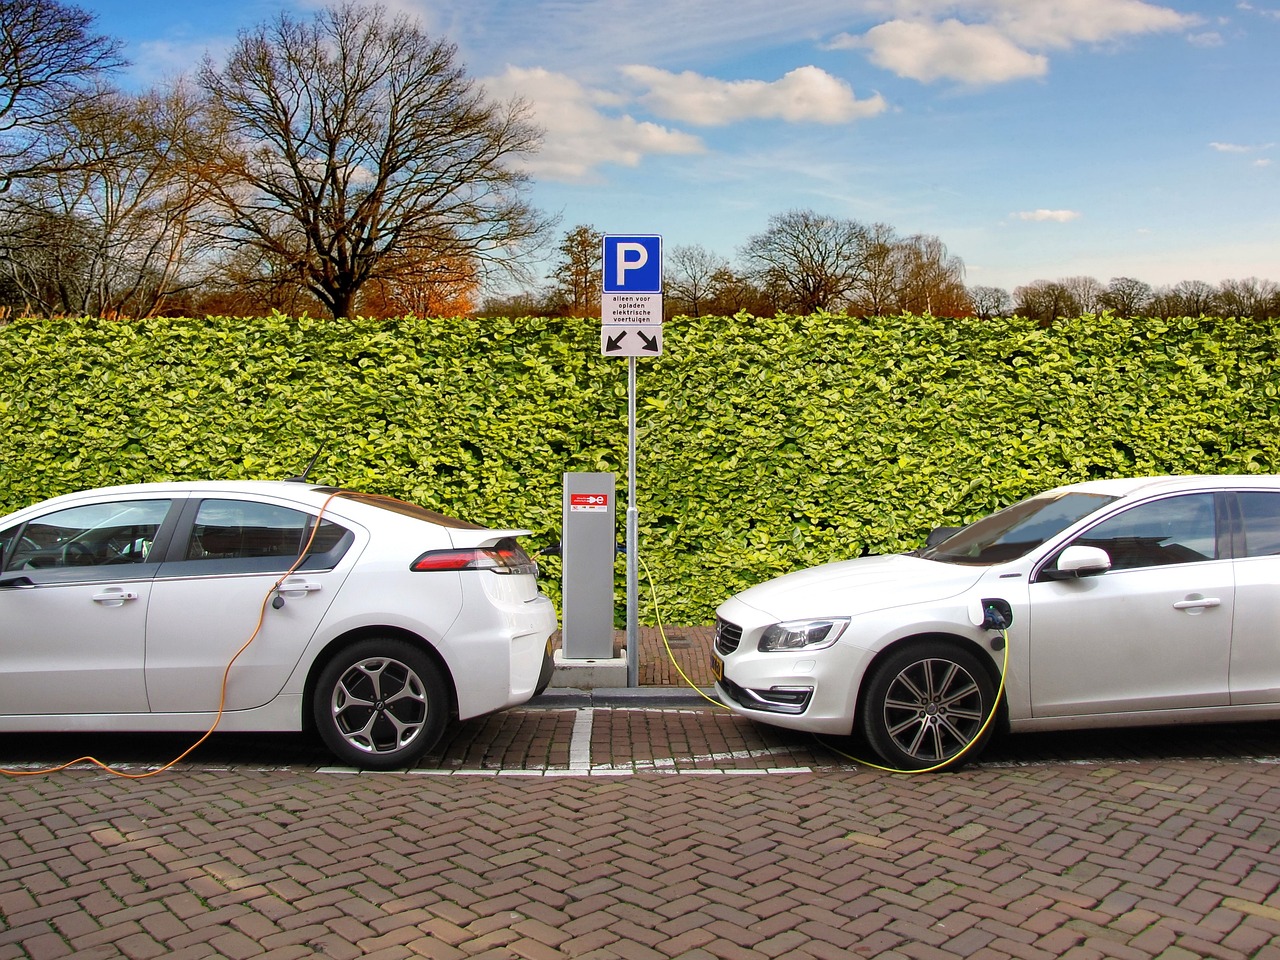 Le bonus écologique des voitures électriques réduit pour les ménages plus aisés